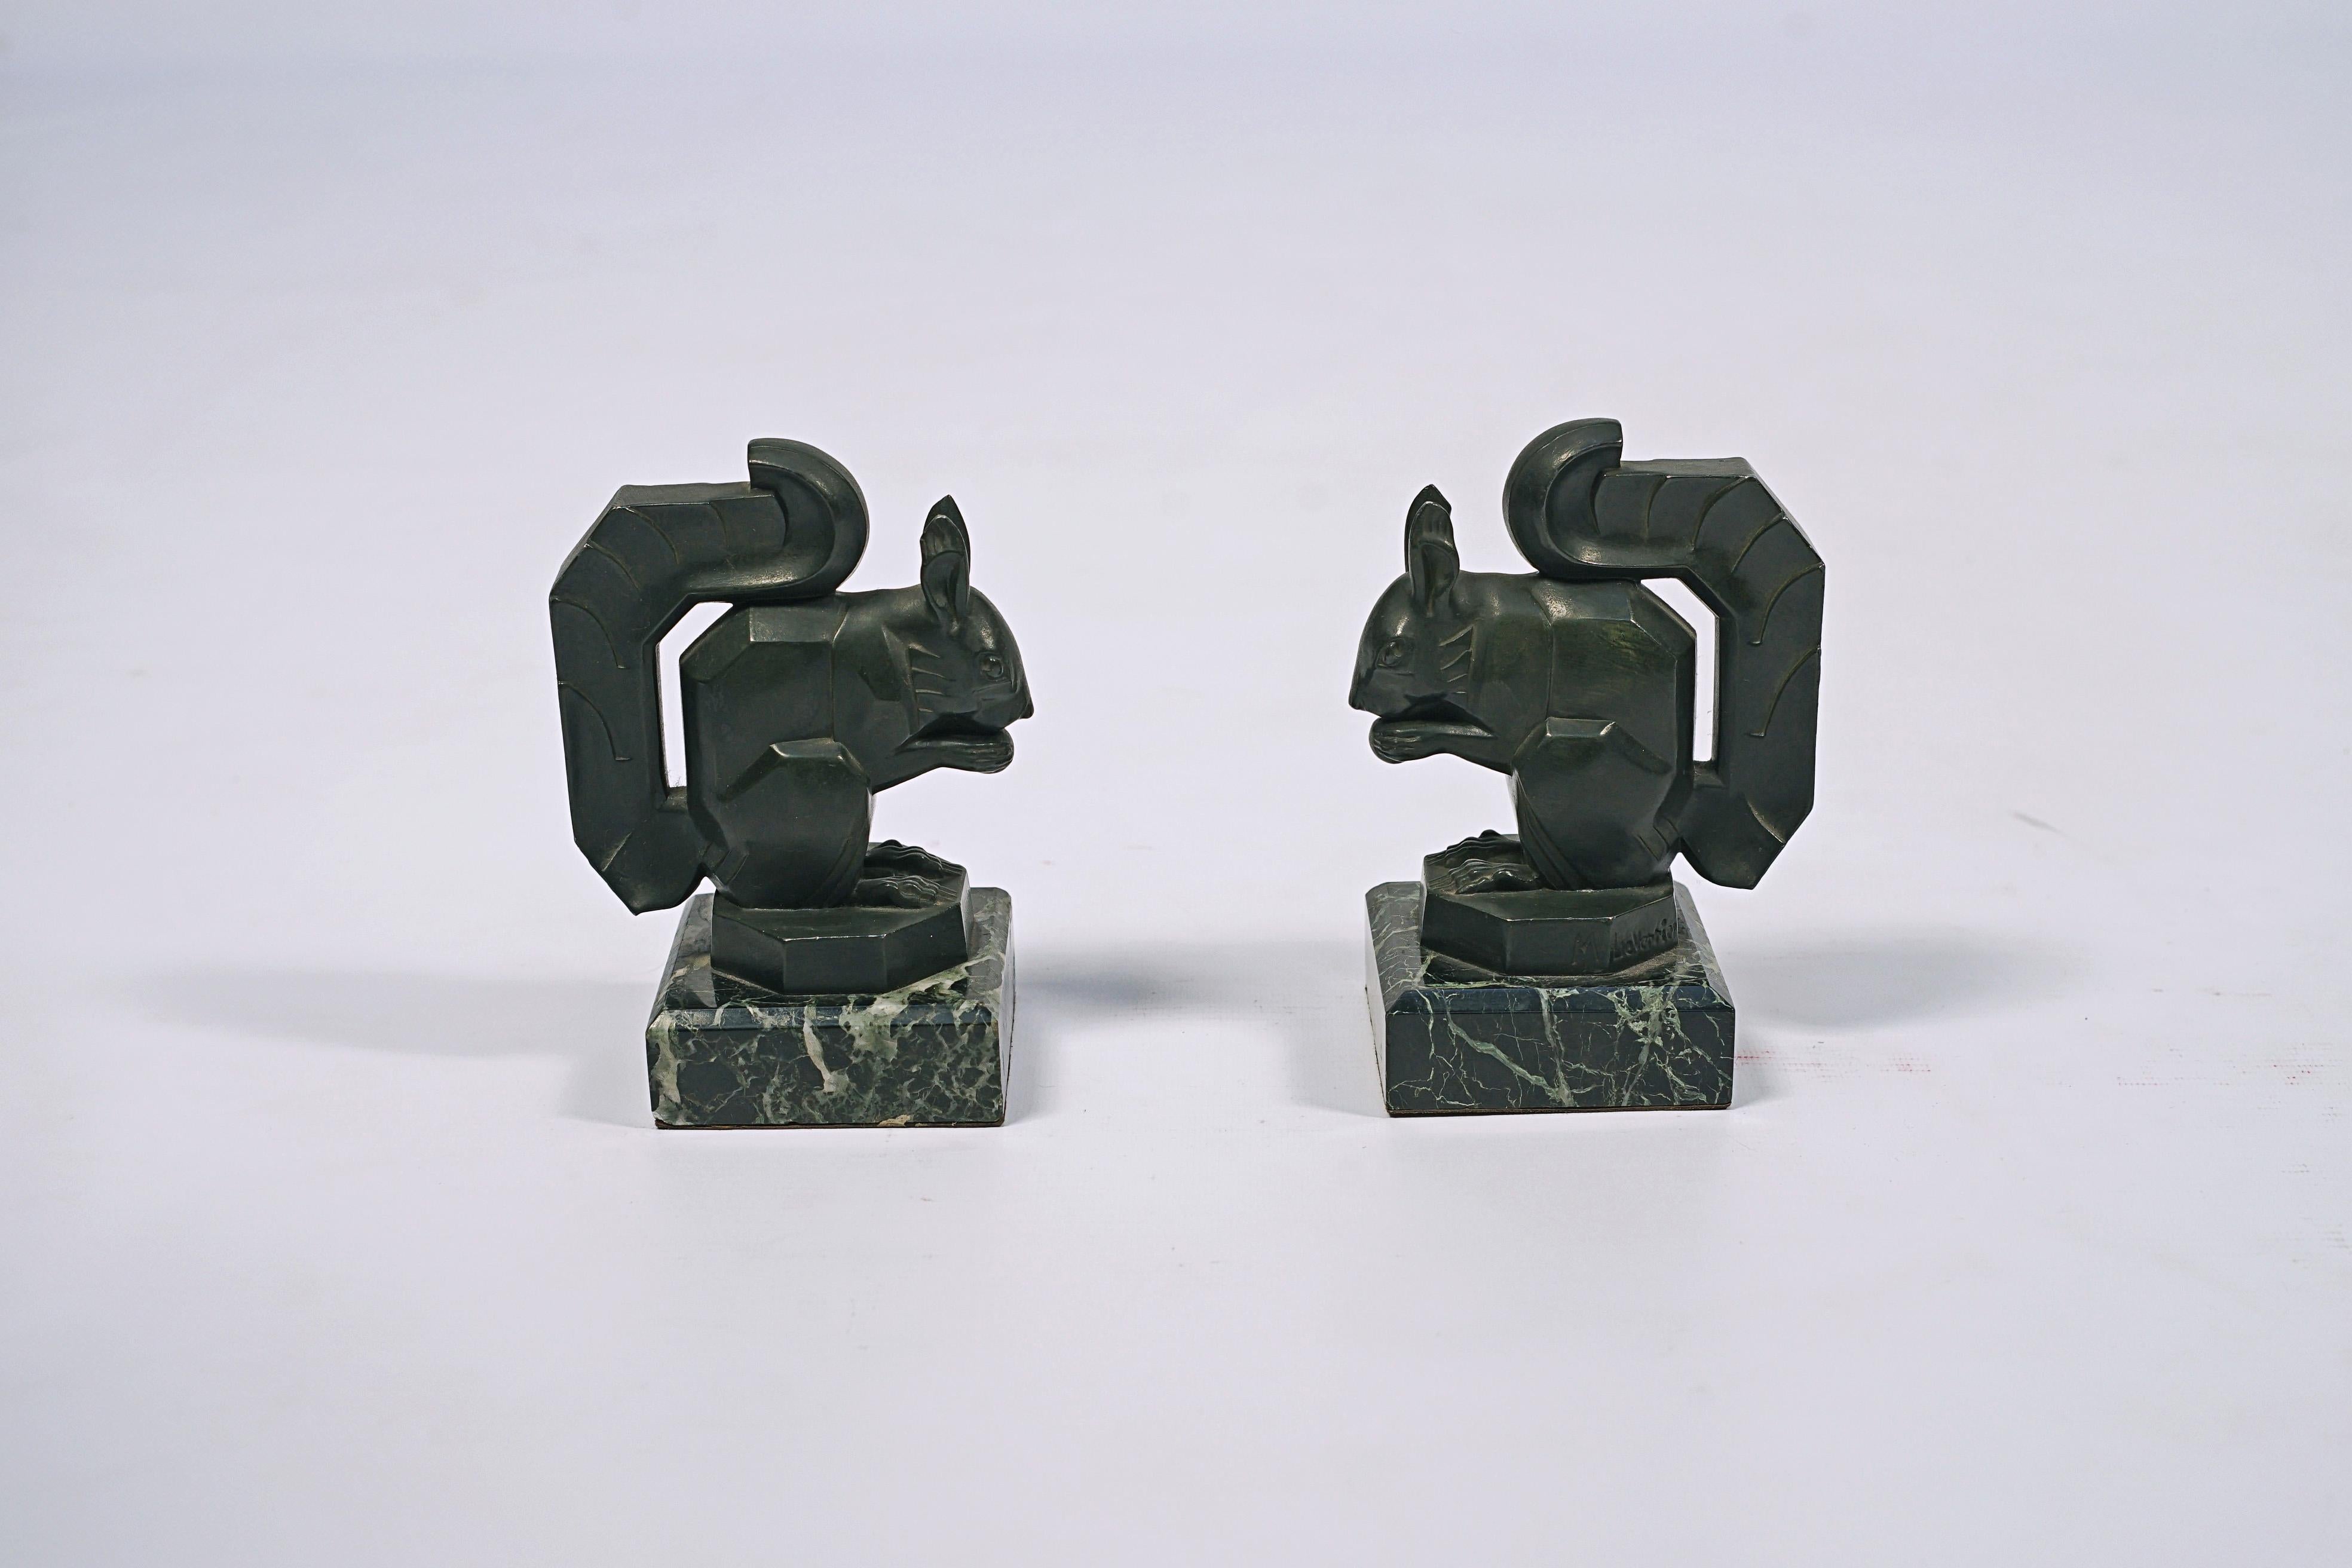 Paar Eichhörnchen-Buchpressen Modell N° 453, aus Bronze mit grüner Patina und mit einem Sockel aus grünem Marmor. Hergestellt von Max Le Verrier (1891- 1973). Unterzeichnet M Le Verrier.

Frankreich, CIRCA 1930.